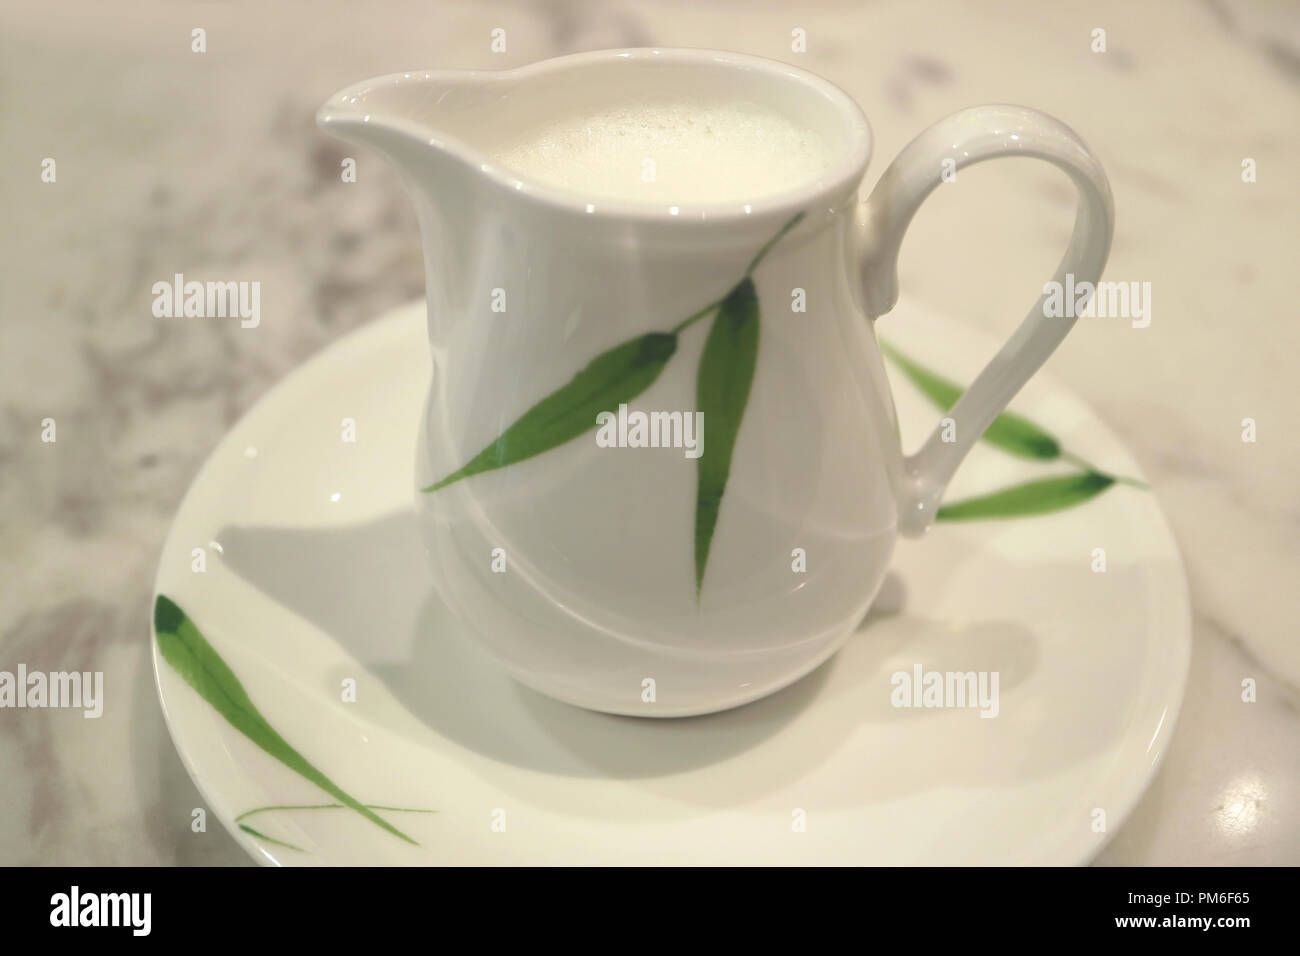 Chiuso fino bianco con pattern di verde in ceramica brocca del latte su marmo bianco tabella Foto Stock